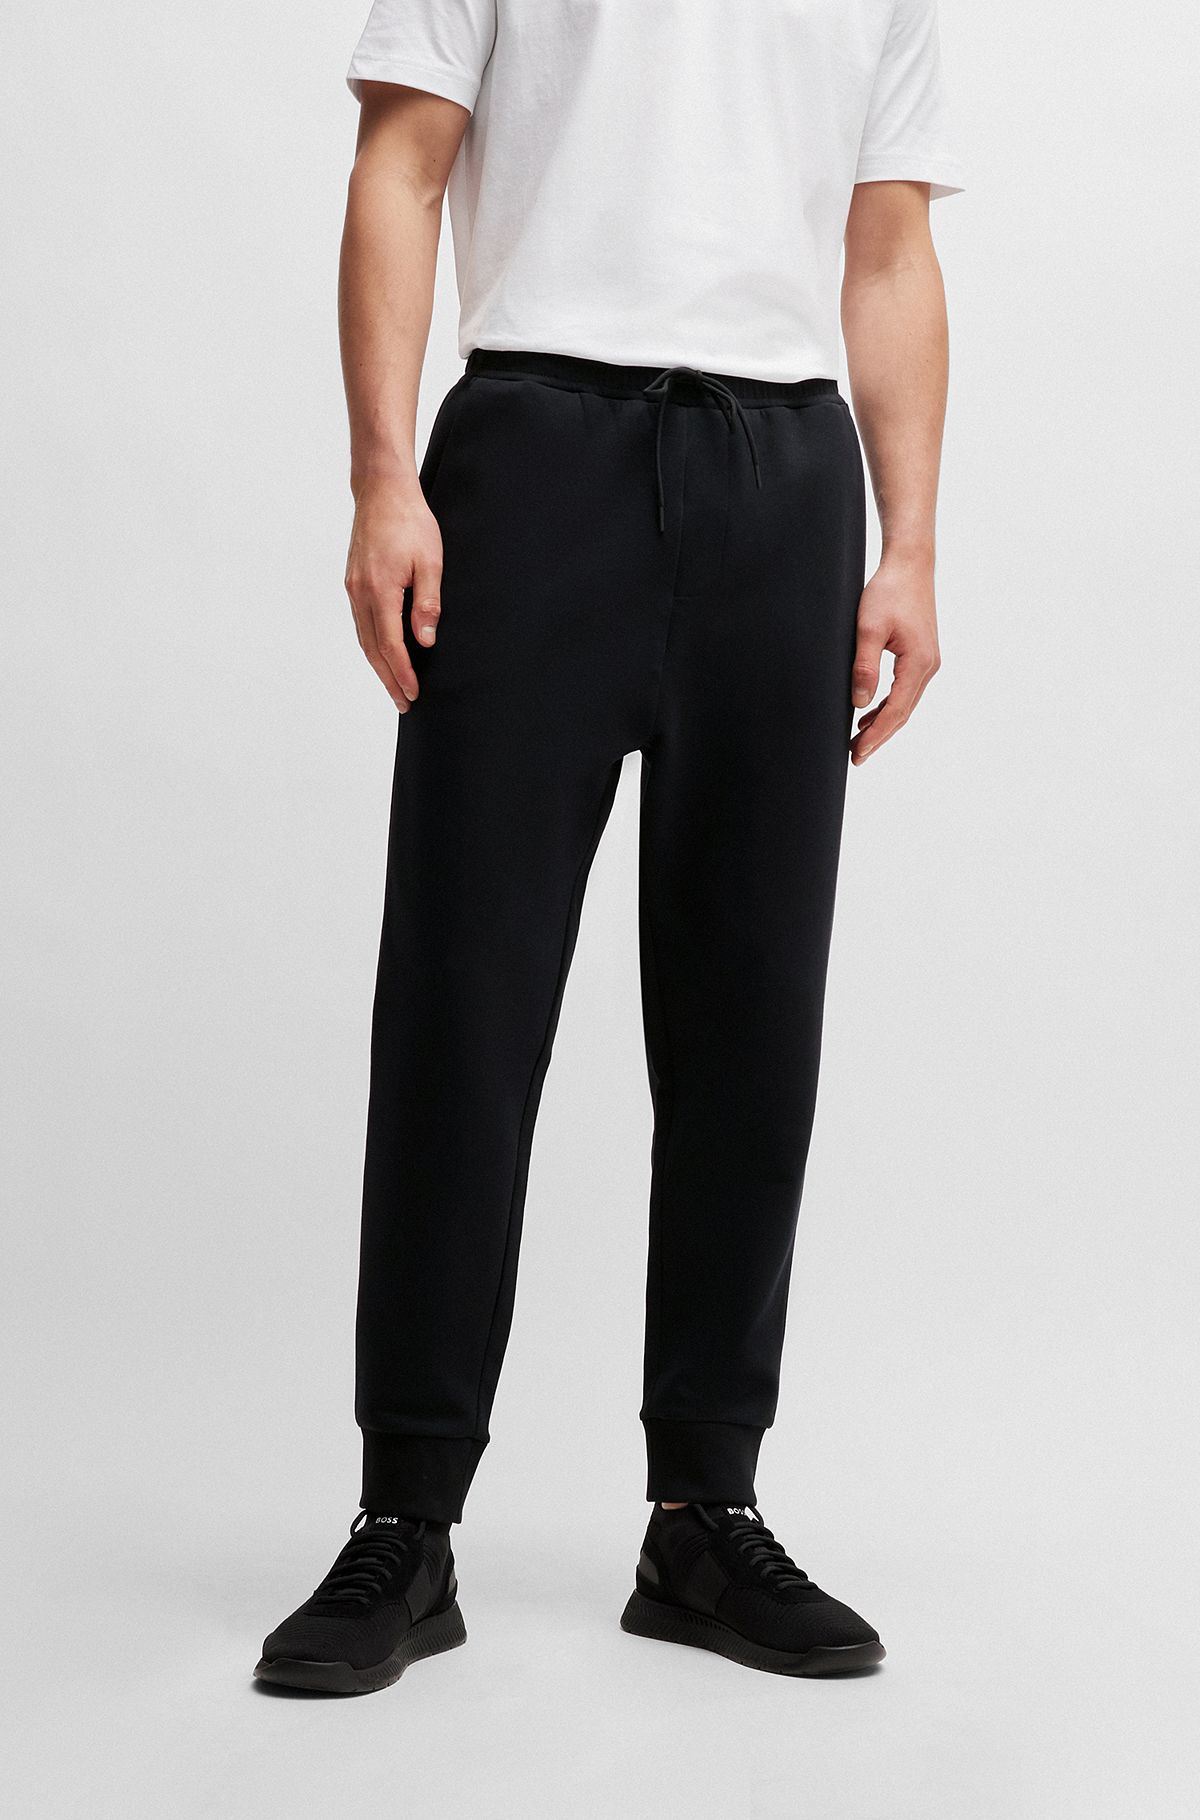 Pantalones de chándal de algodón elástico con logo estampado, Negro